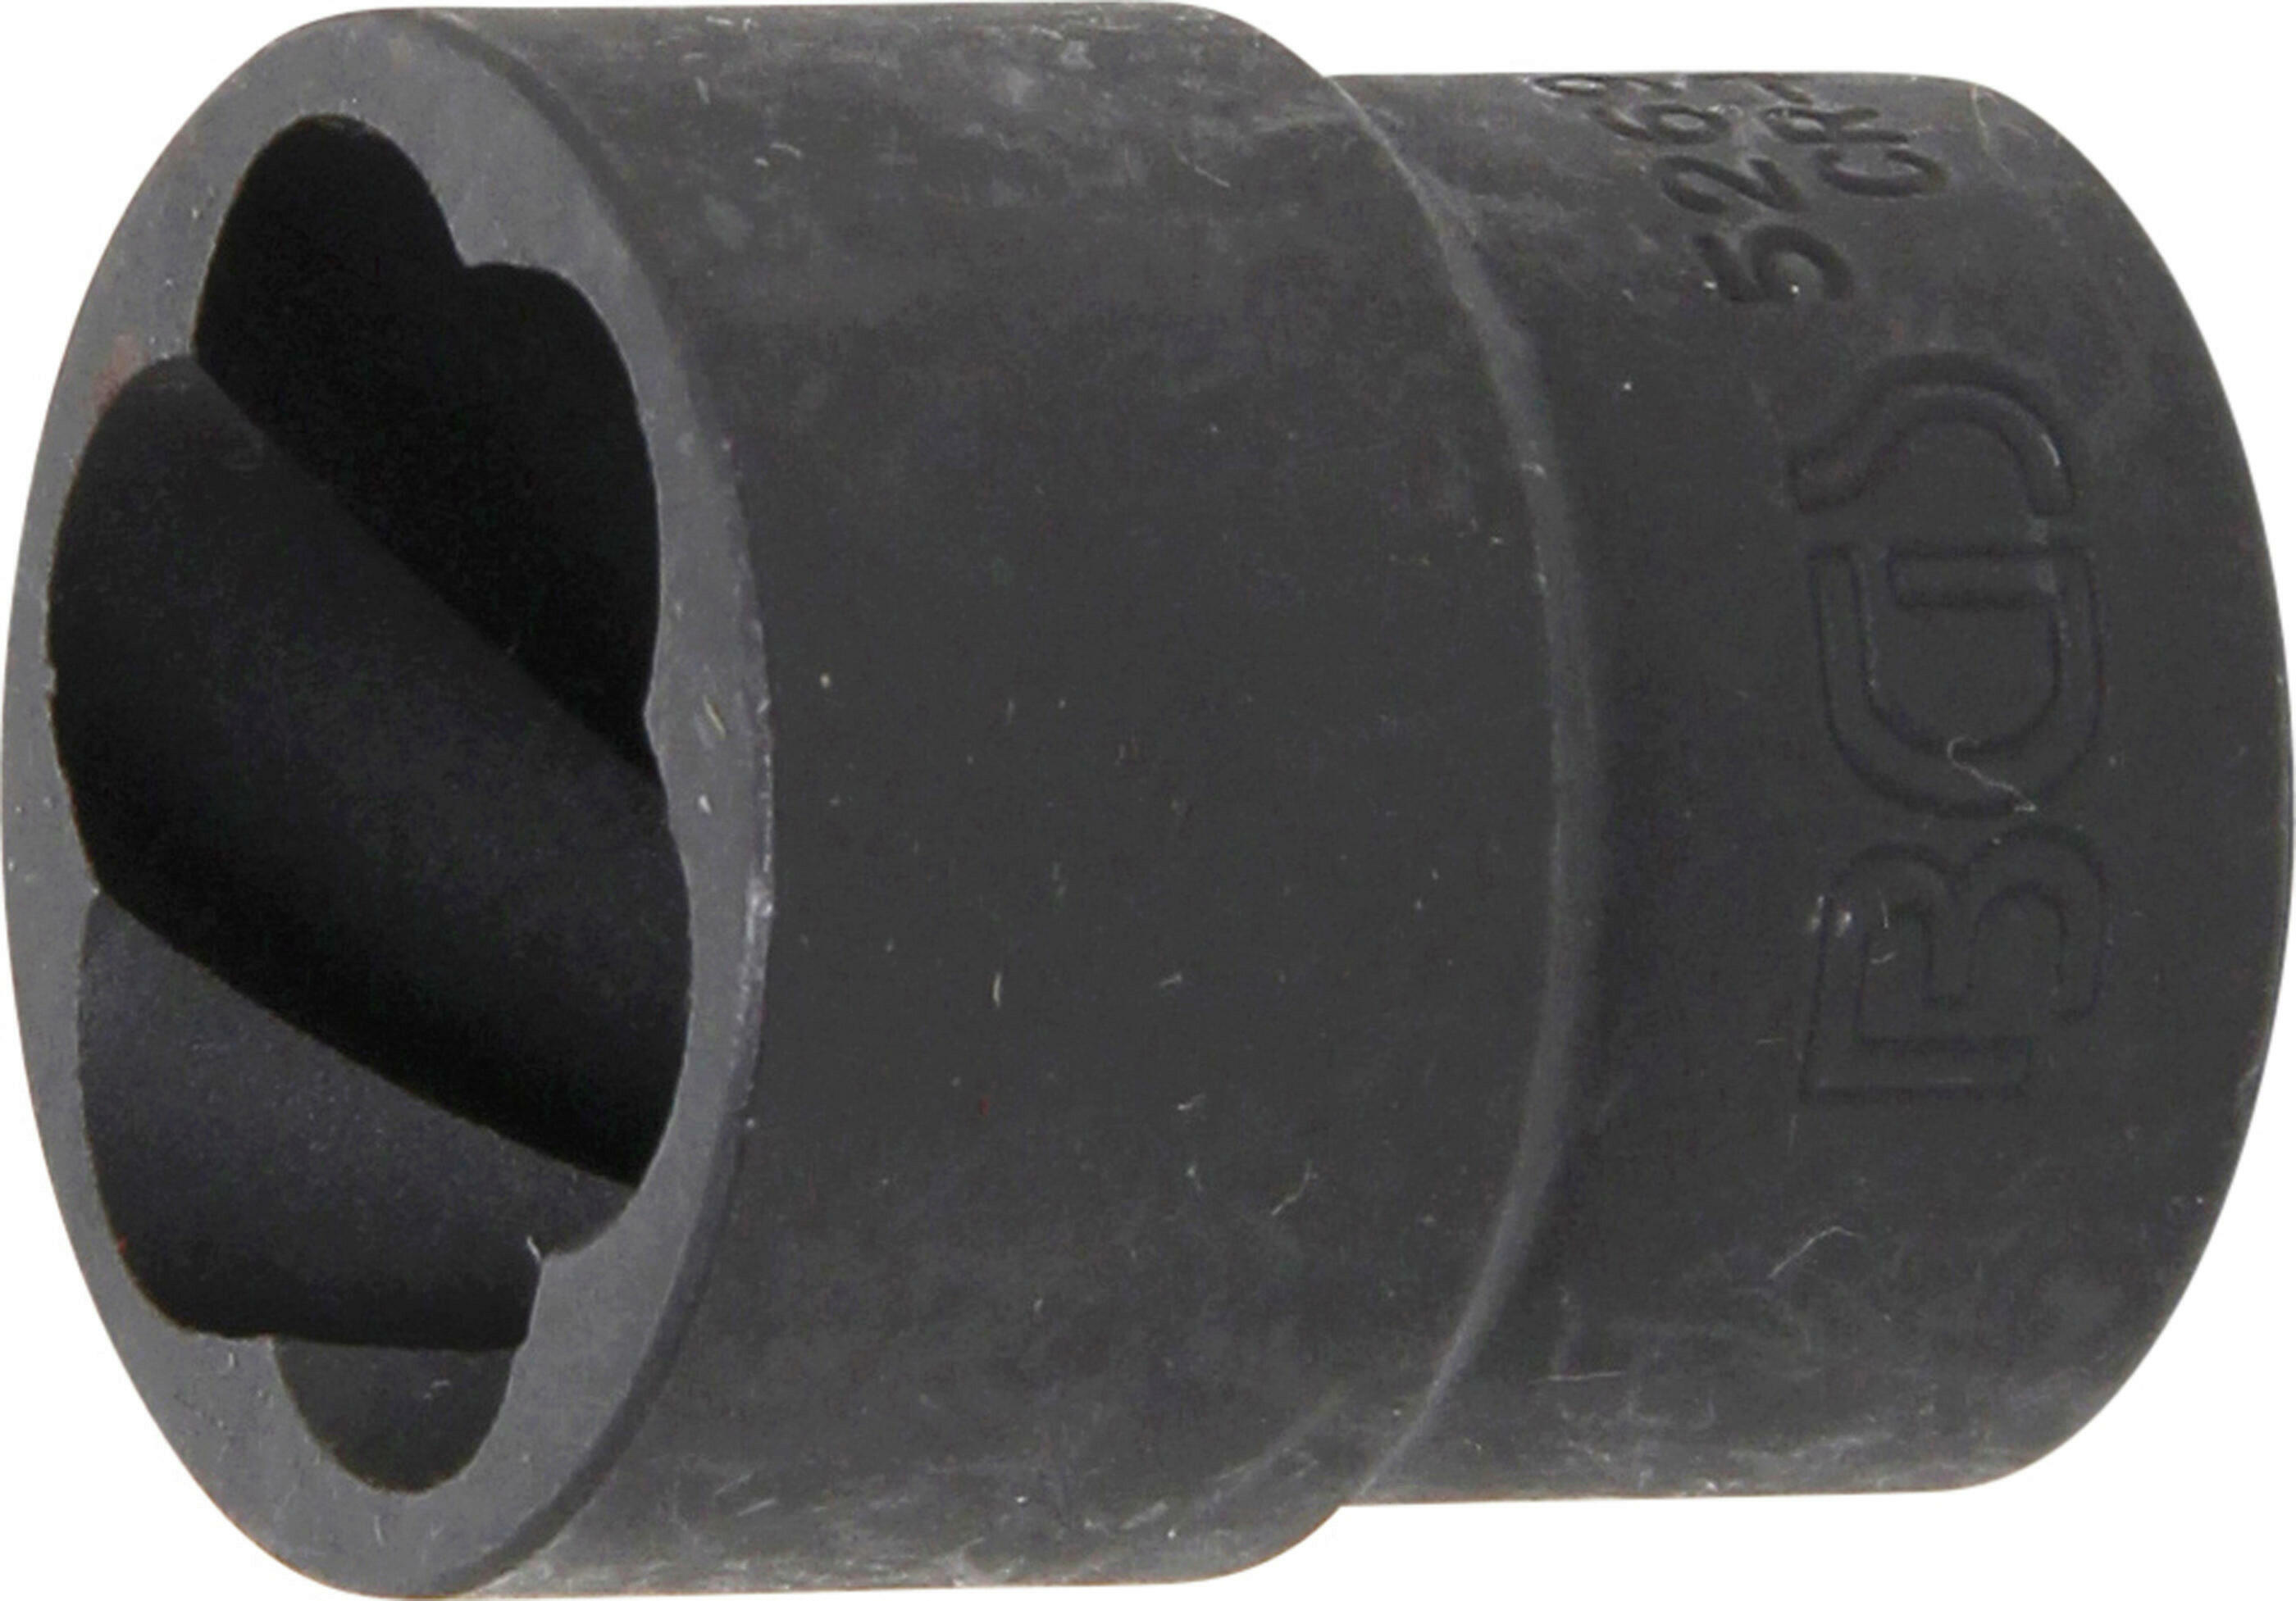 Spiral-Profil-Steckschlüssel-Einsatz / Schraubenausdreher | Antrieb Innenvierkant 12,5 mm (1/2") | SW 21 mm